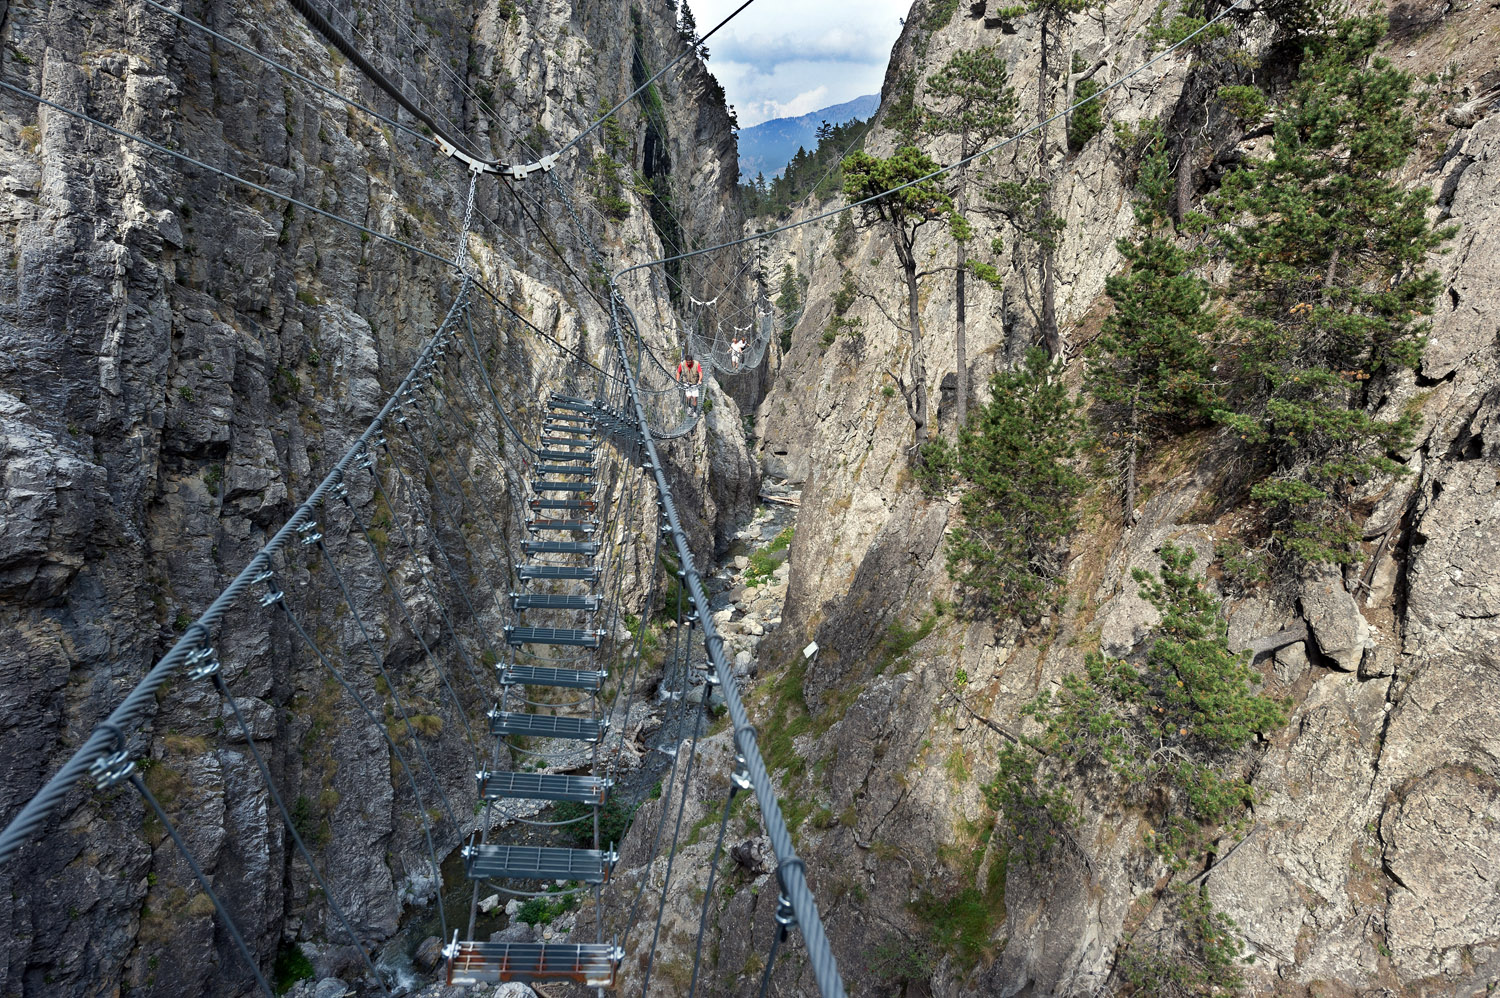 Tibetan bridge, St. Gervasio gorges, Piedmont, Piemonte